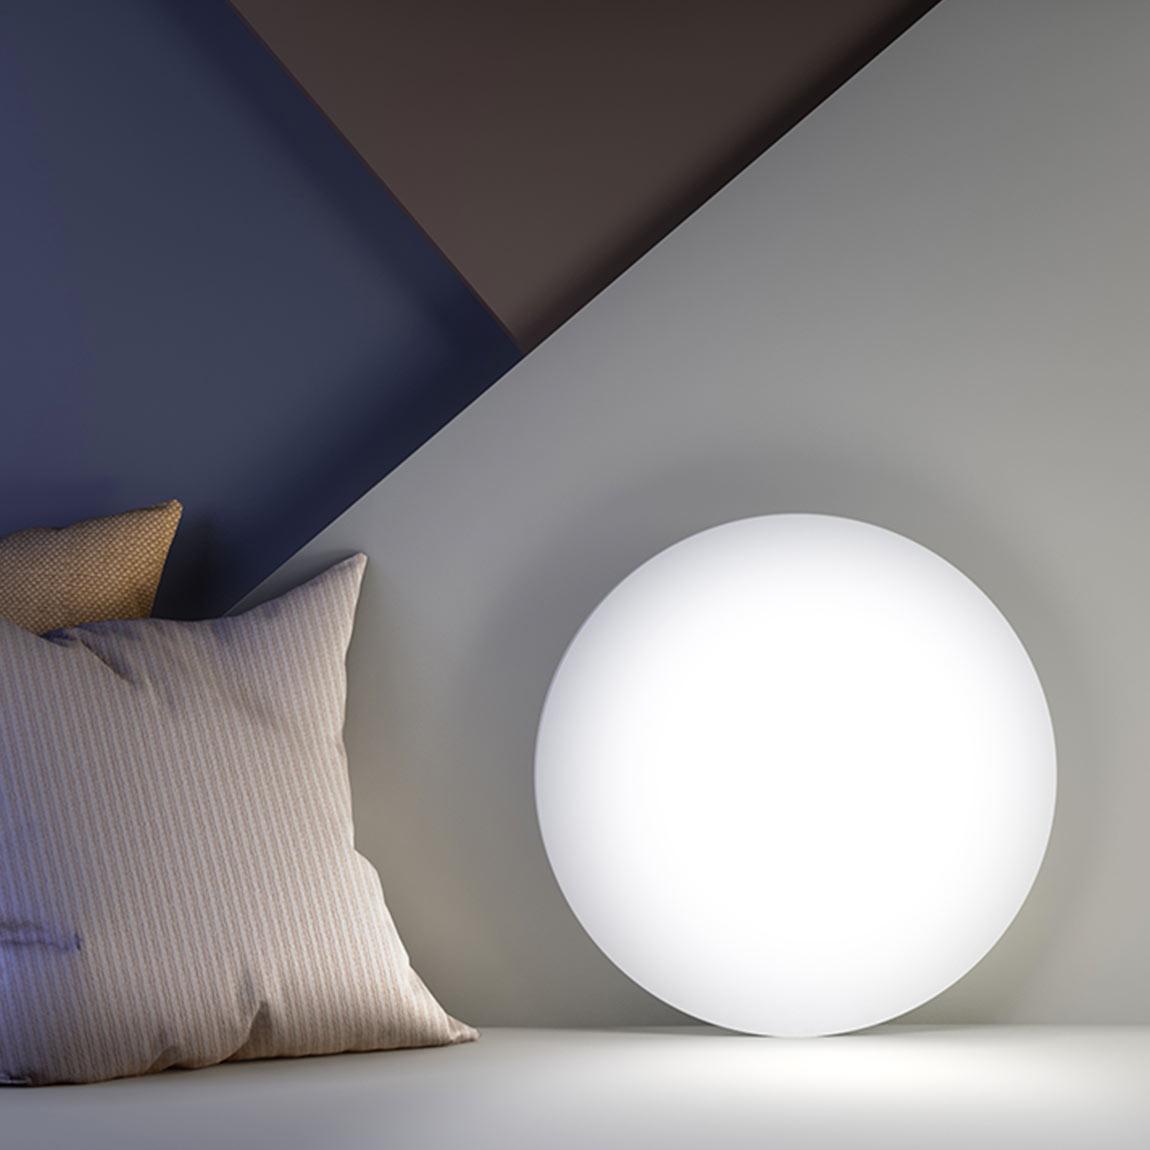 Xiaomi Mi Smart LED Ceiling Light (450mm) - angelehnt an der Wand